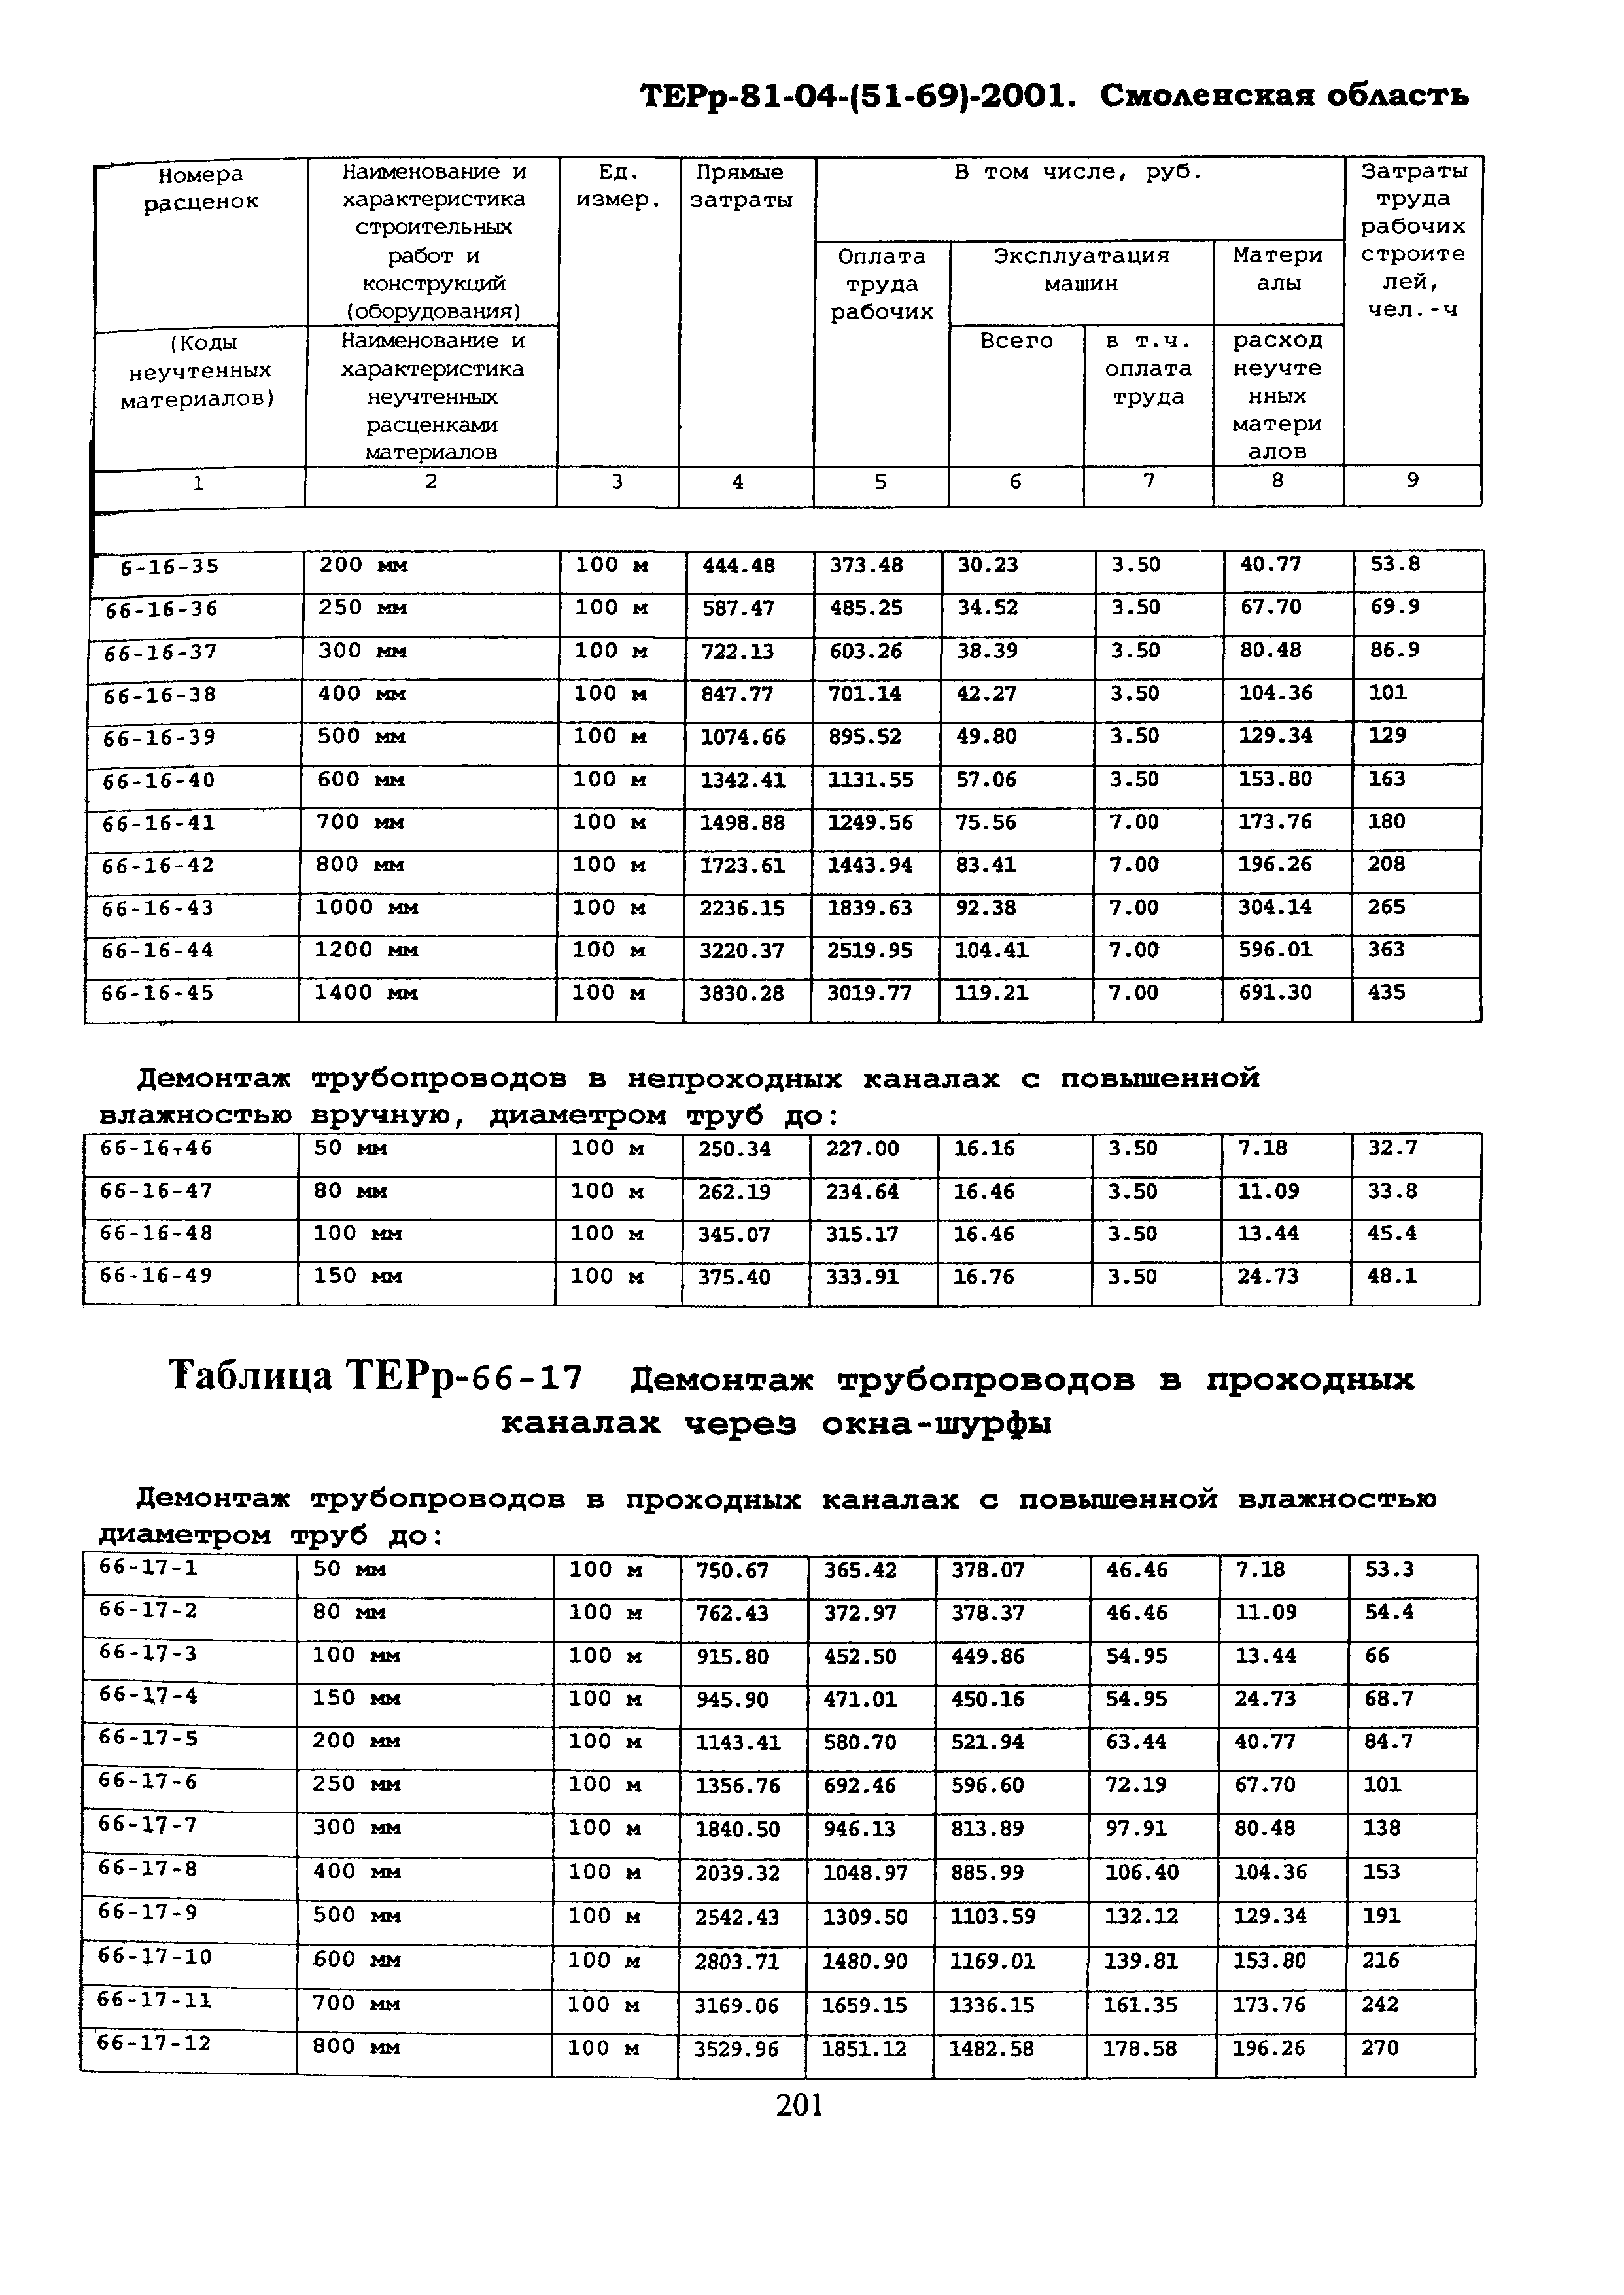 ТЕРр Смоленская область 2001-66